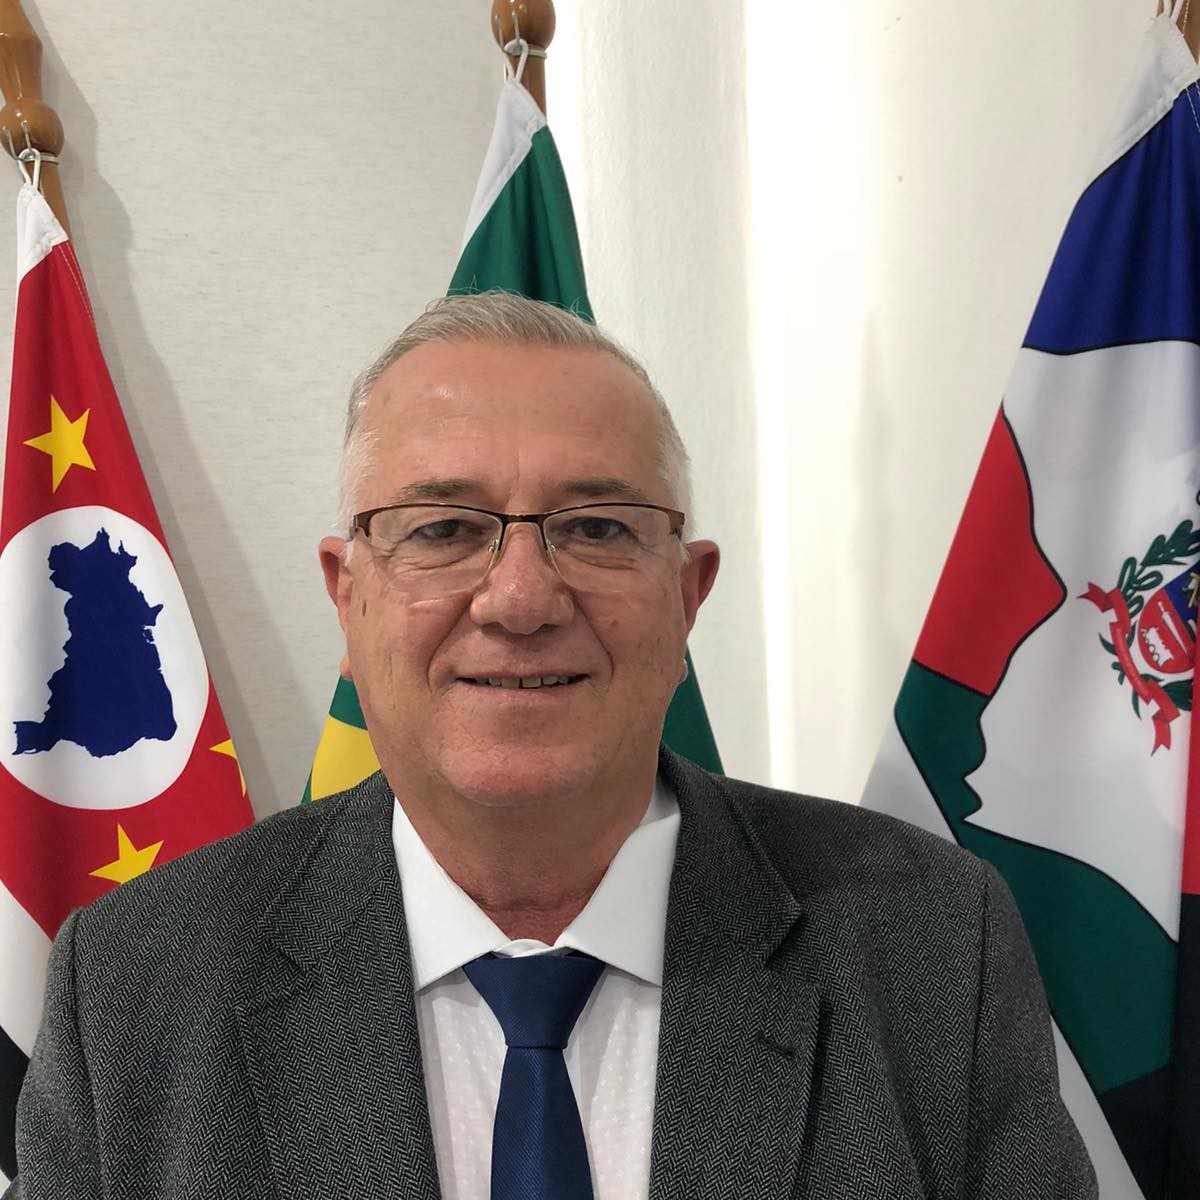 Justiça nega pedido de defesa e mantém Mineiro (Avante), que teve mandato cassado, afastado do cargo de prefeito de Cachoeira Paulista